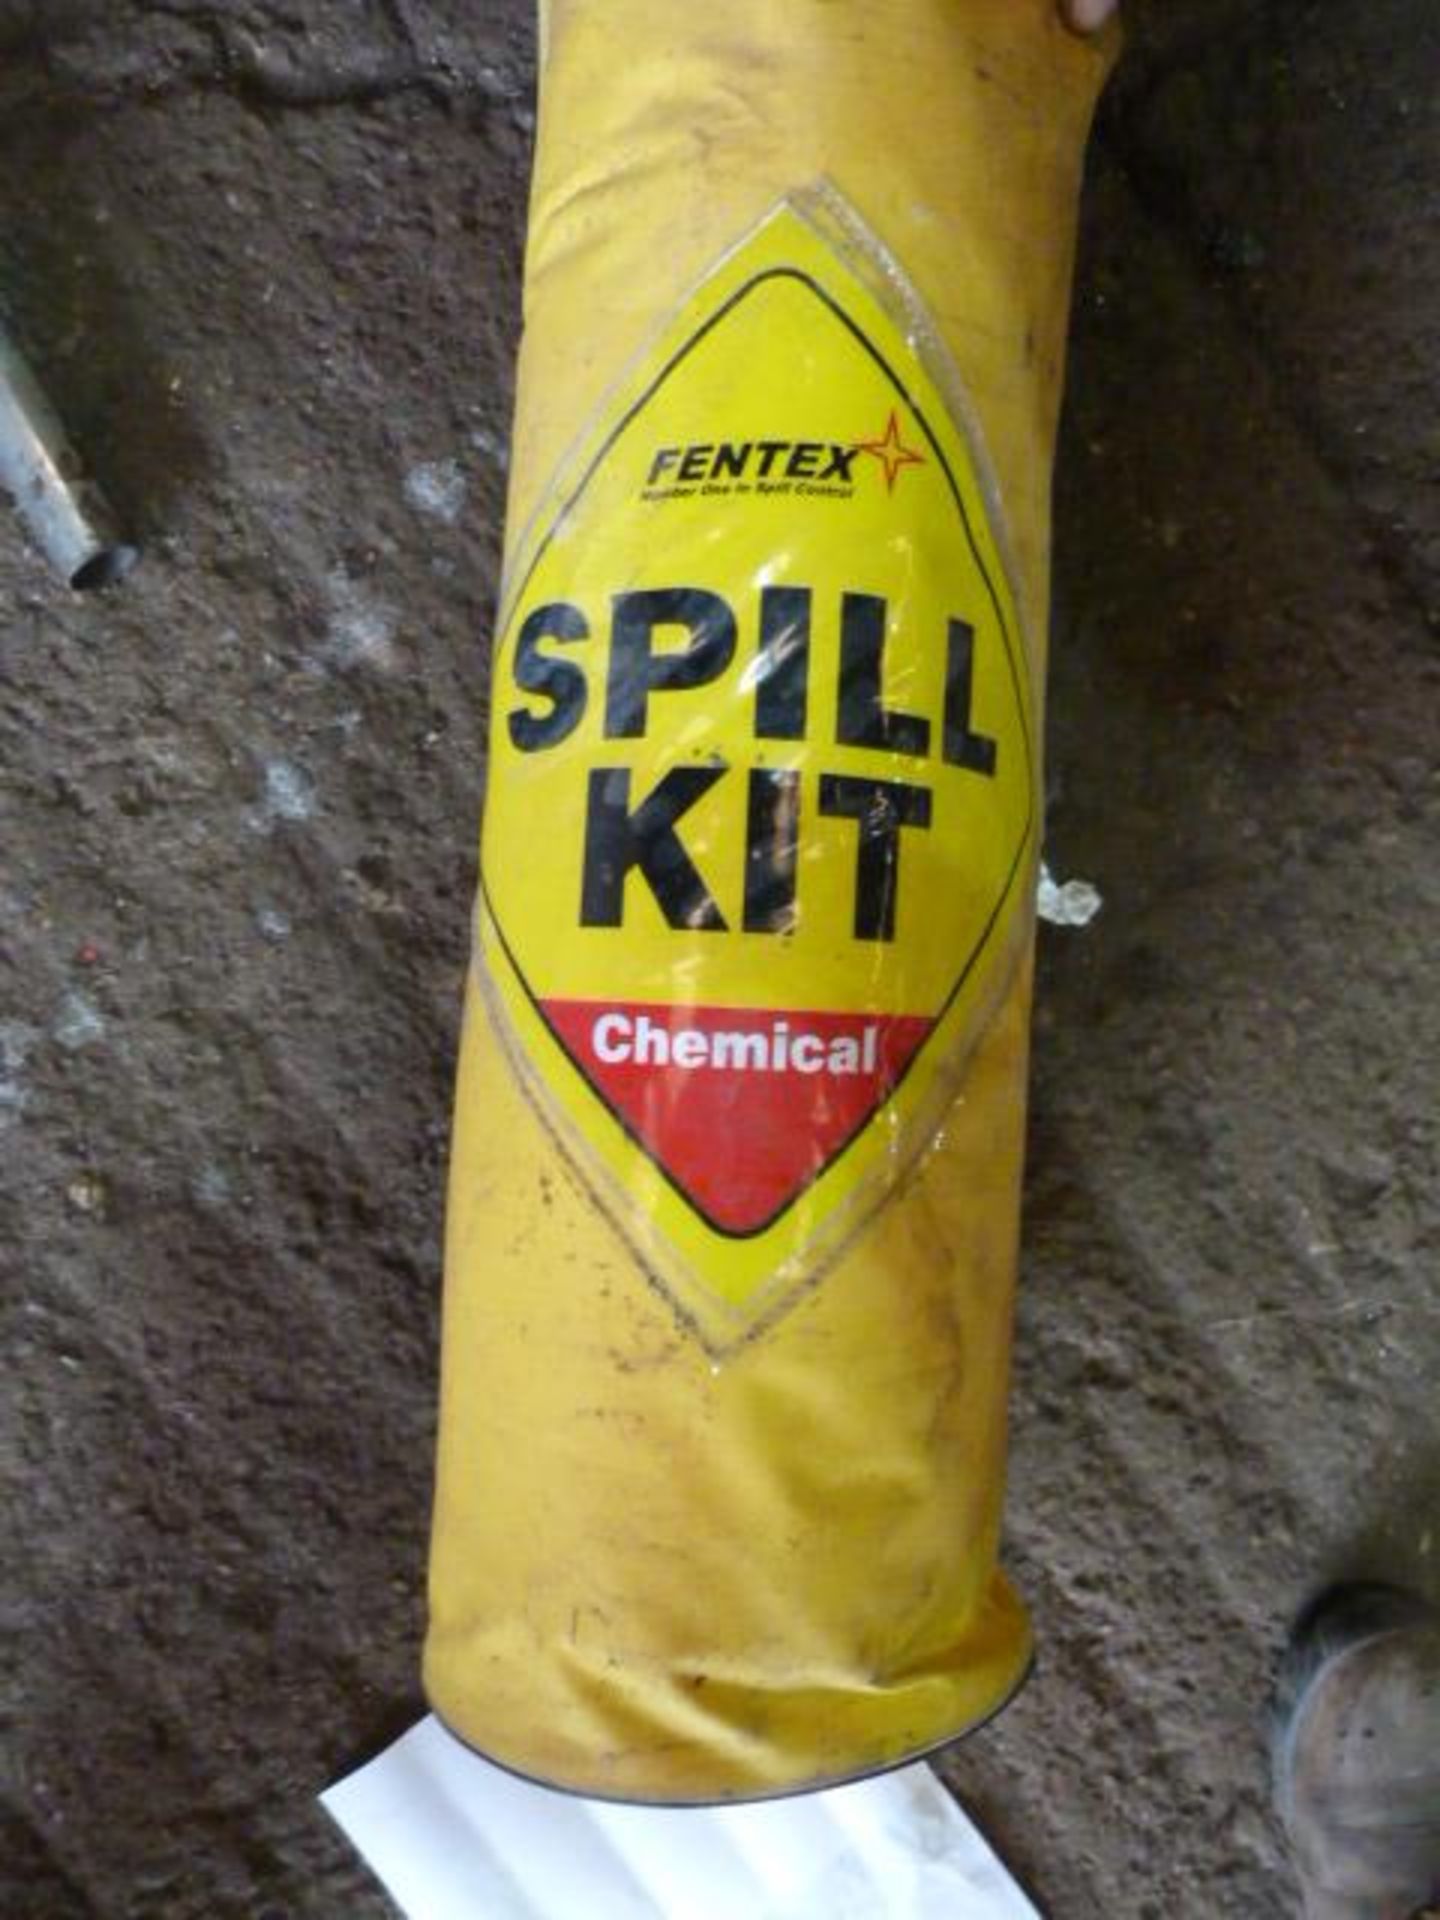 *Fentex Chemical Spill Kit